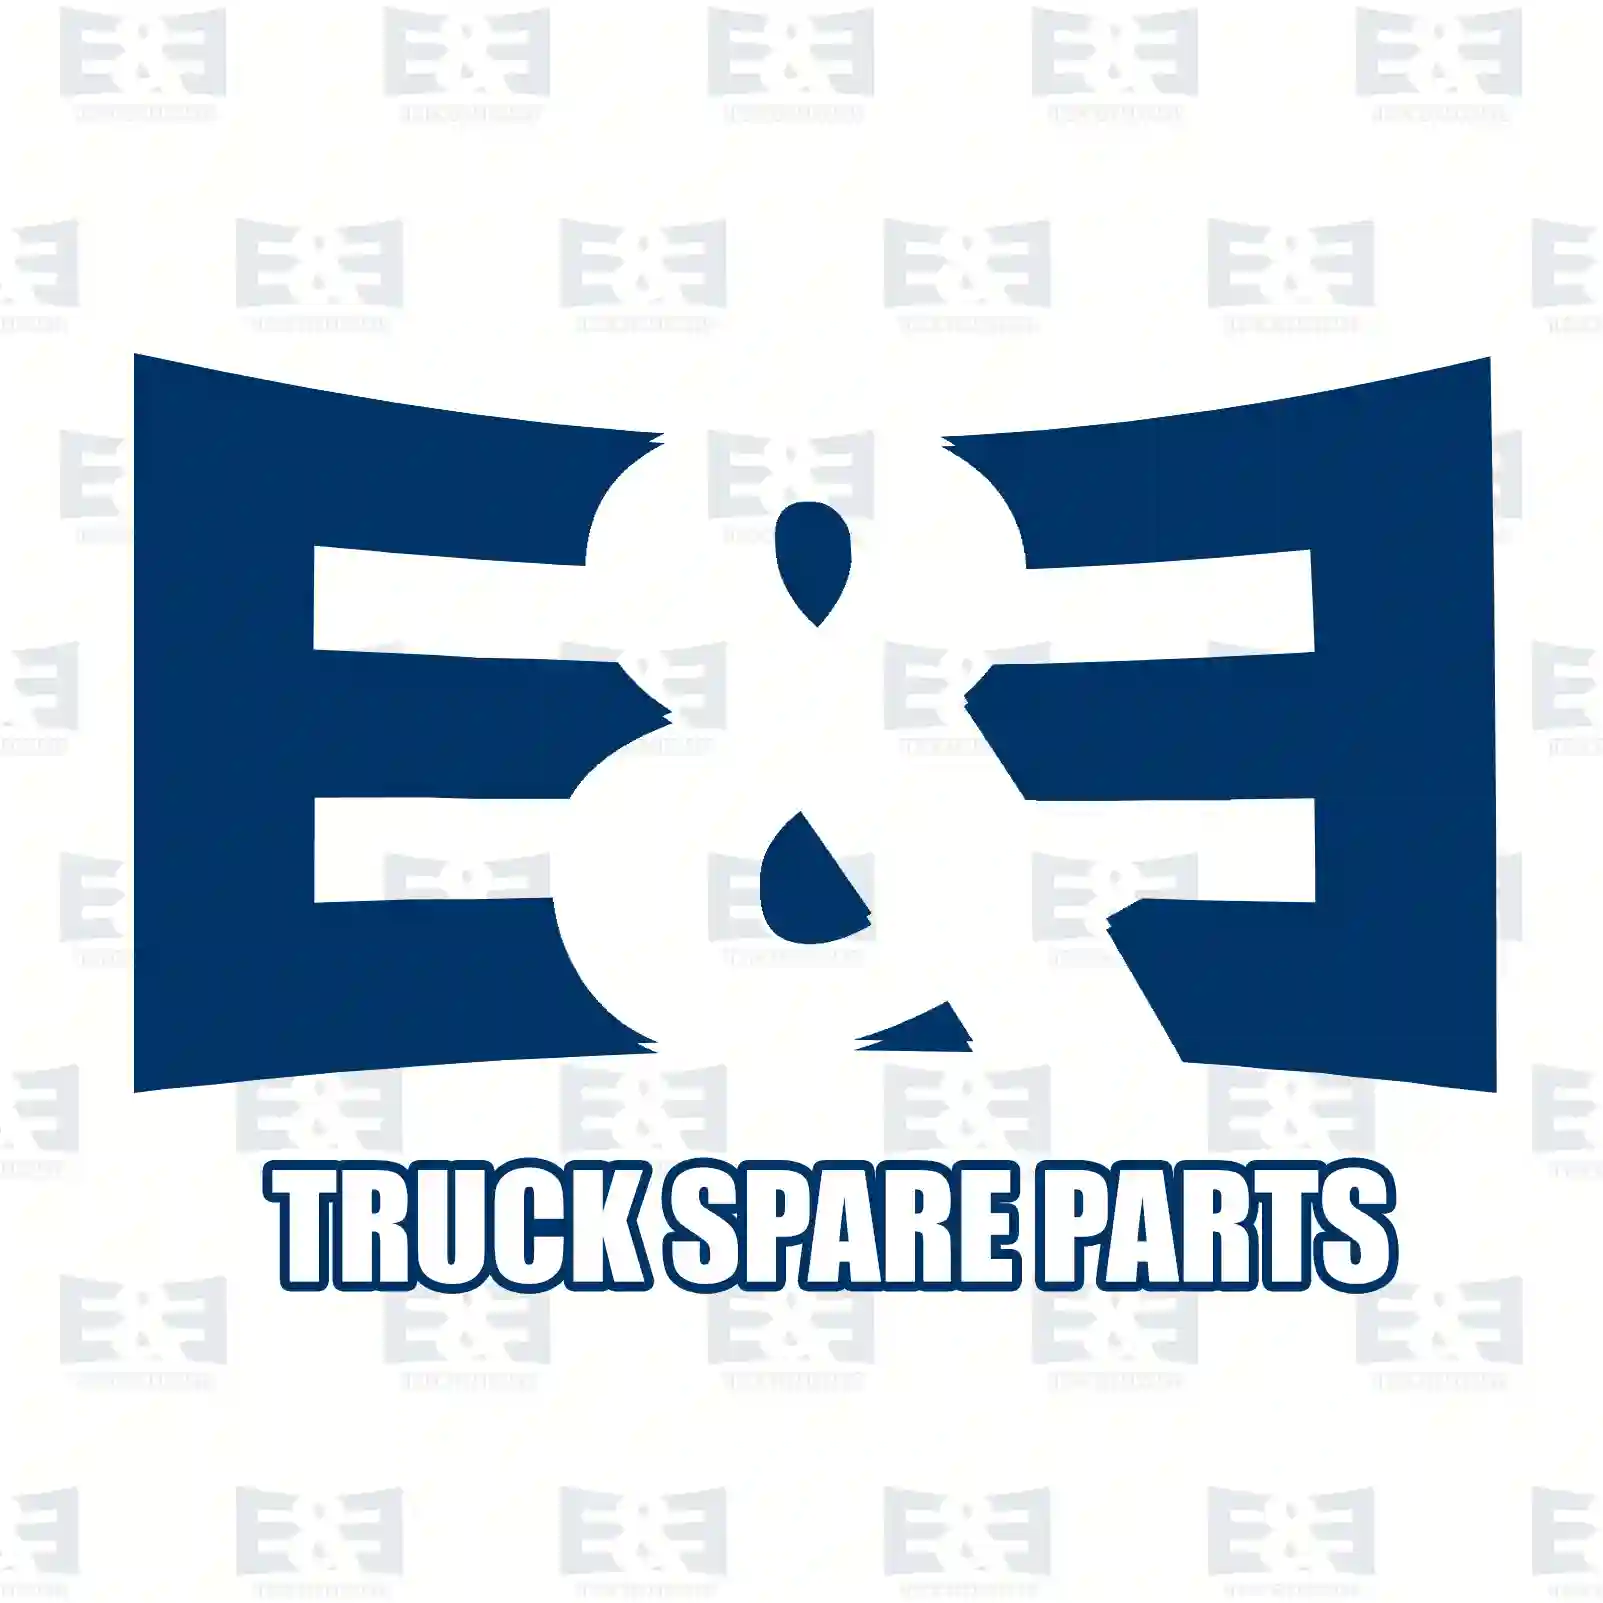 V-stay, 2E2281697, 42575354, 99432563, 99484068 ||  2E2281697 E&E Truck Spare Parts | Truck Spare Parts, Auotomotive Spare Parts V-stay, 2E2281697, 42575354, 99432563, 99484068 ||  2E2281697 E&E Truck Spare Parts | Truck Spare Parts, Auotomotive Spare Parts